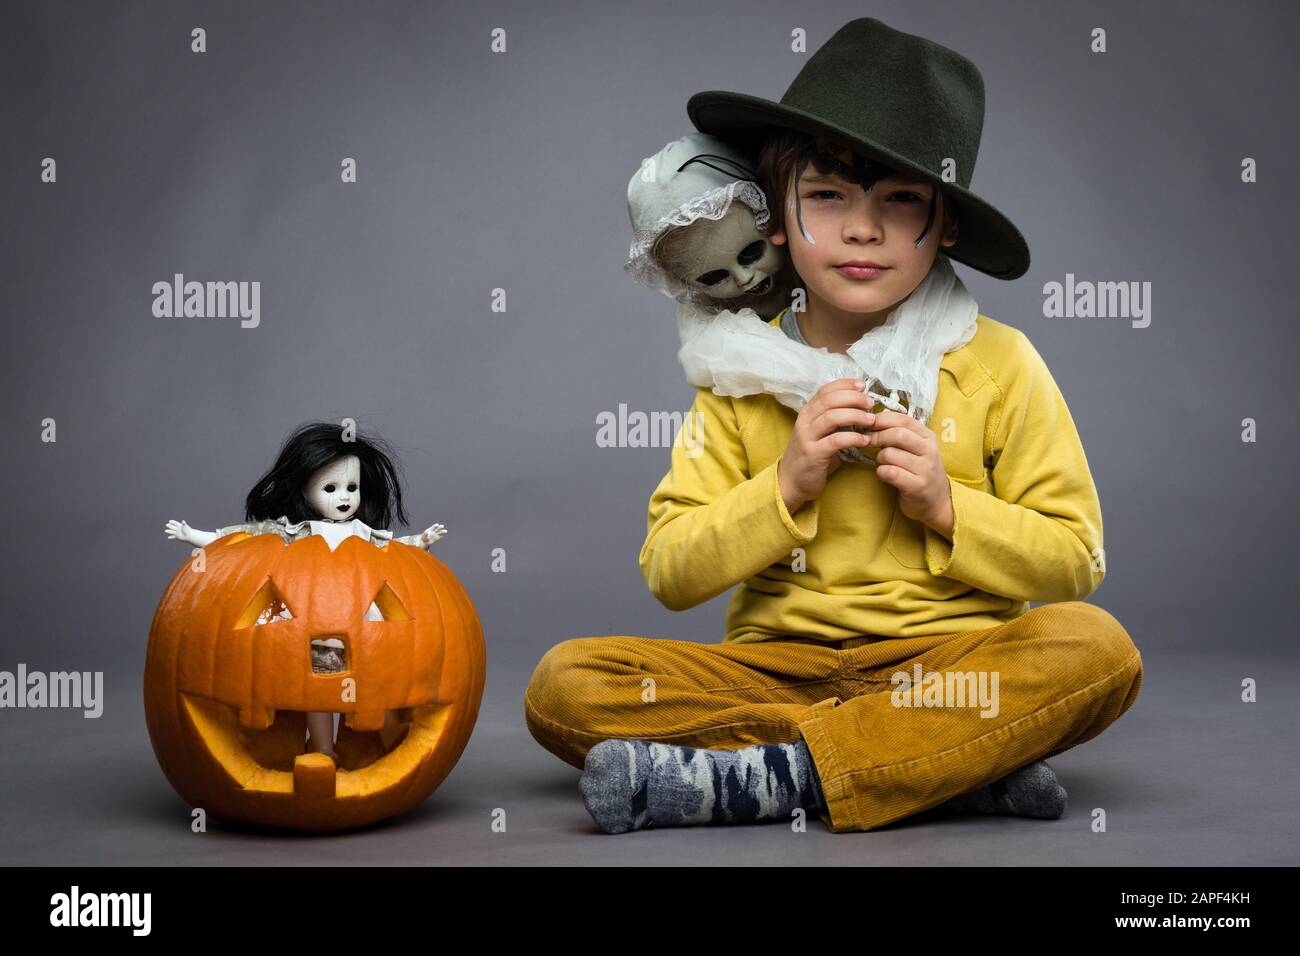 Allegro ragazzino in un cappello tiene un guazzo, zucca con bambola spaventosa accanto a lui, sfondo grigio. Festa di Halloween Foto Stock